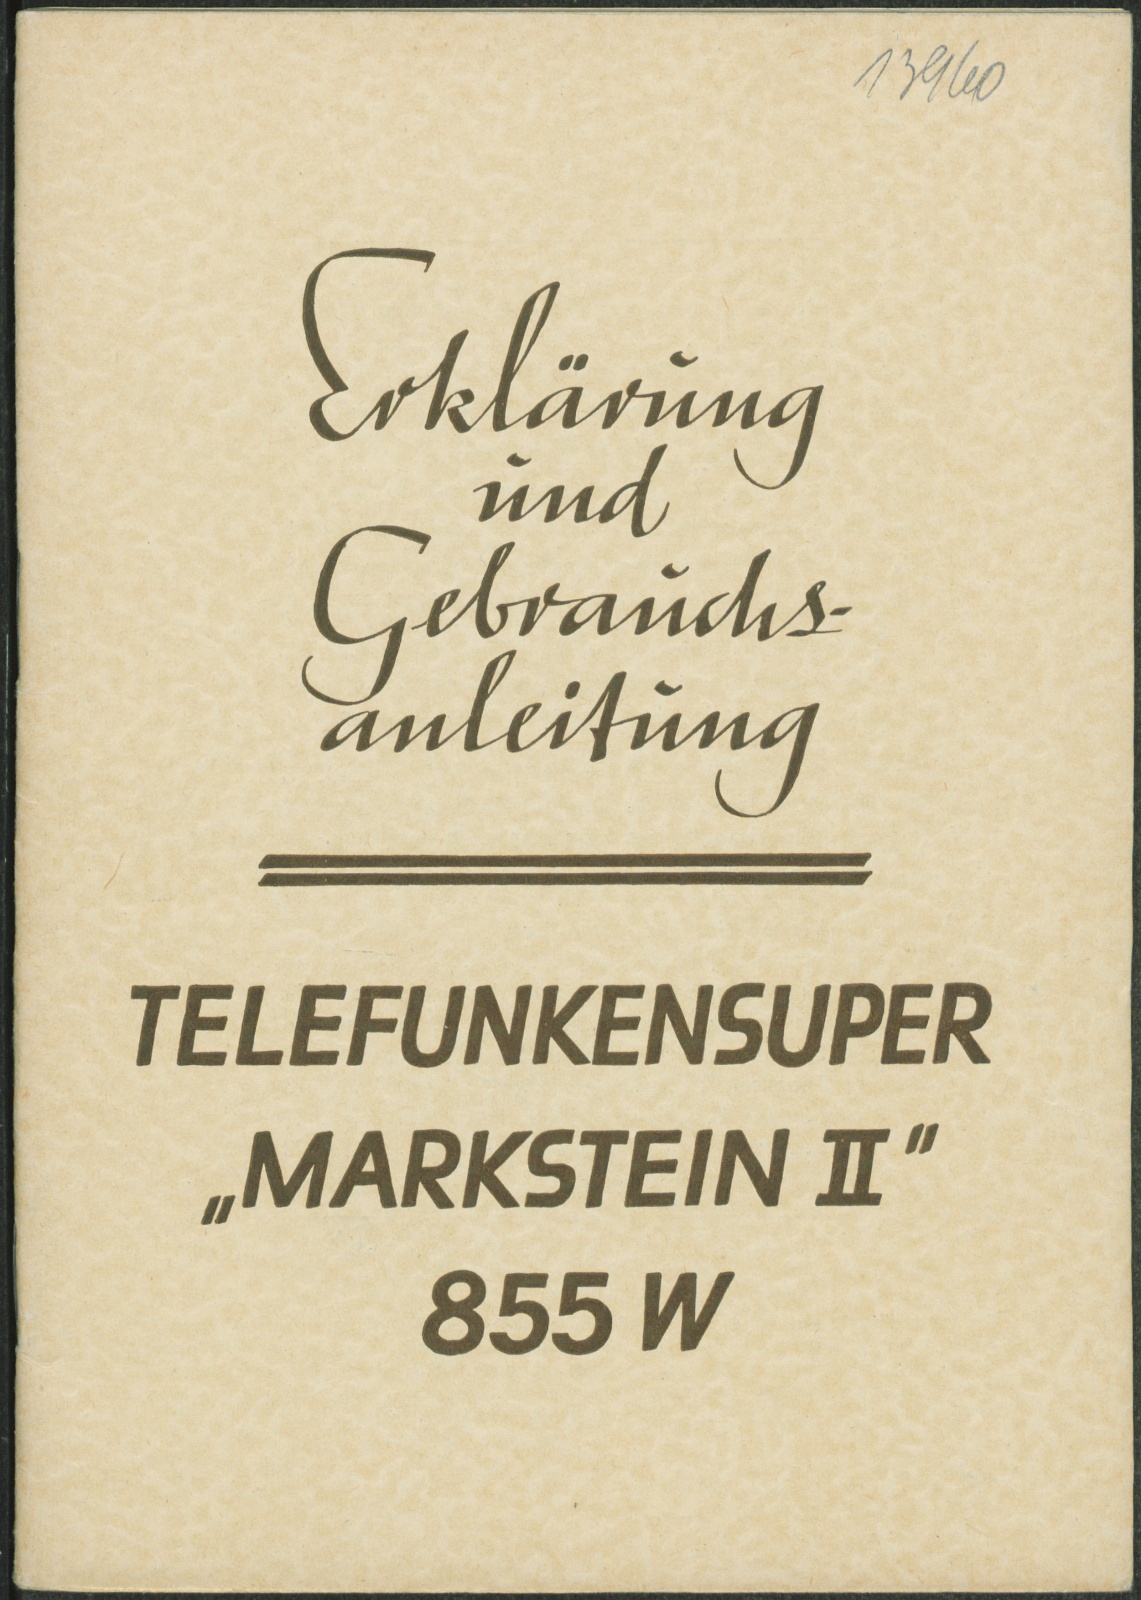 Bedienungsanleitung: Erklärung und Gebrauchsanleitung Telefunkensuper Markstein II (2) 855 W (Stiftung Deutsches Technikmuseum Berlin CC0)